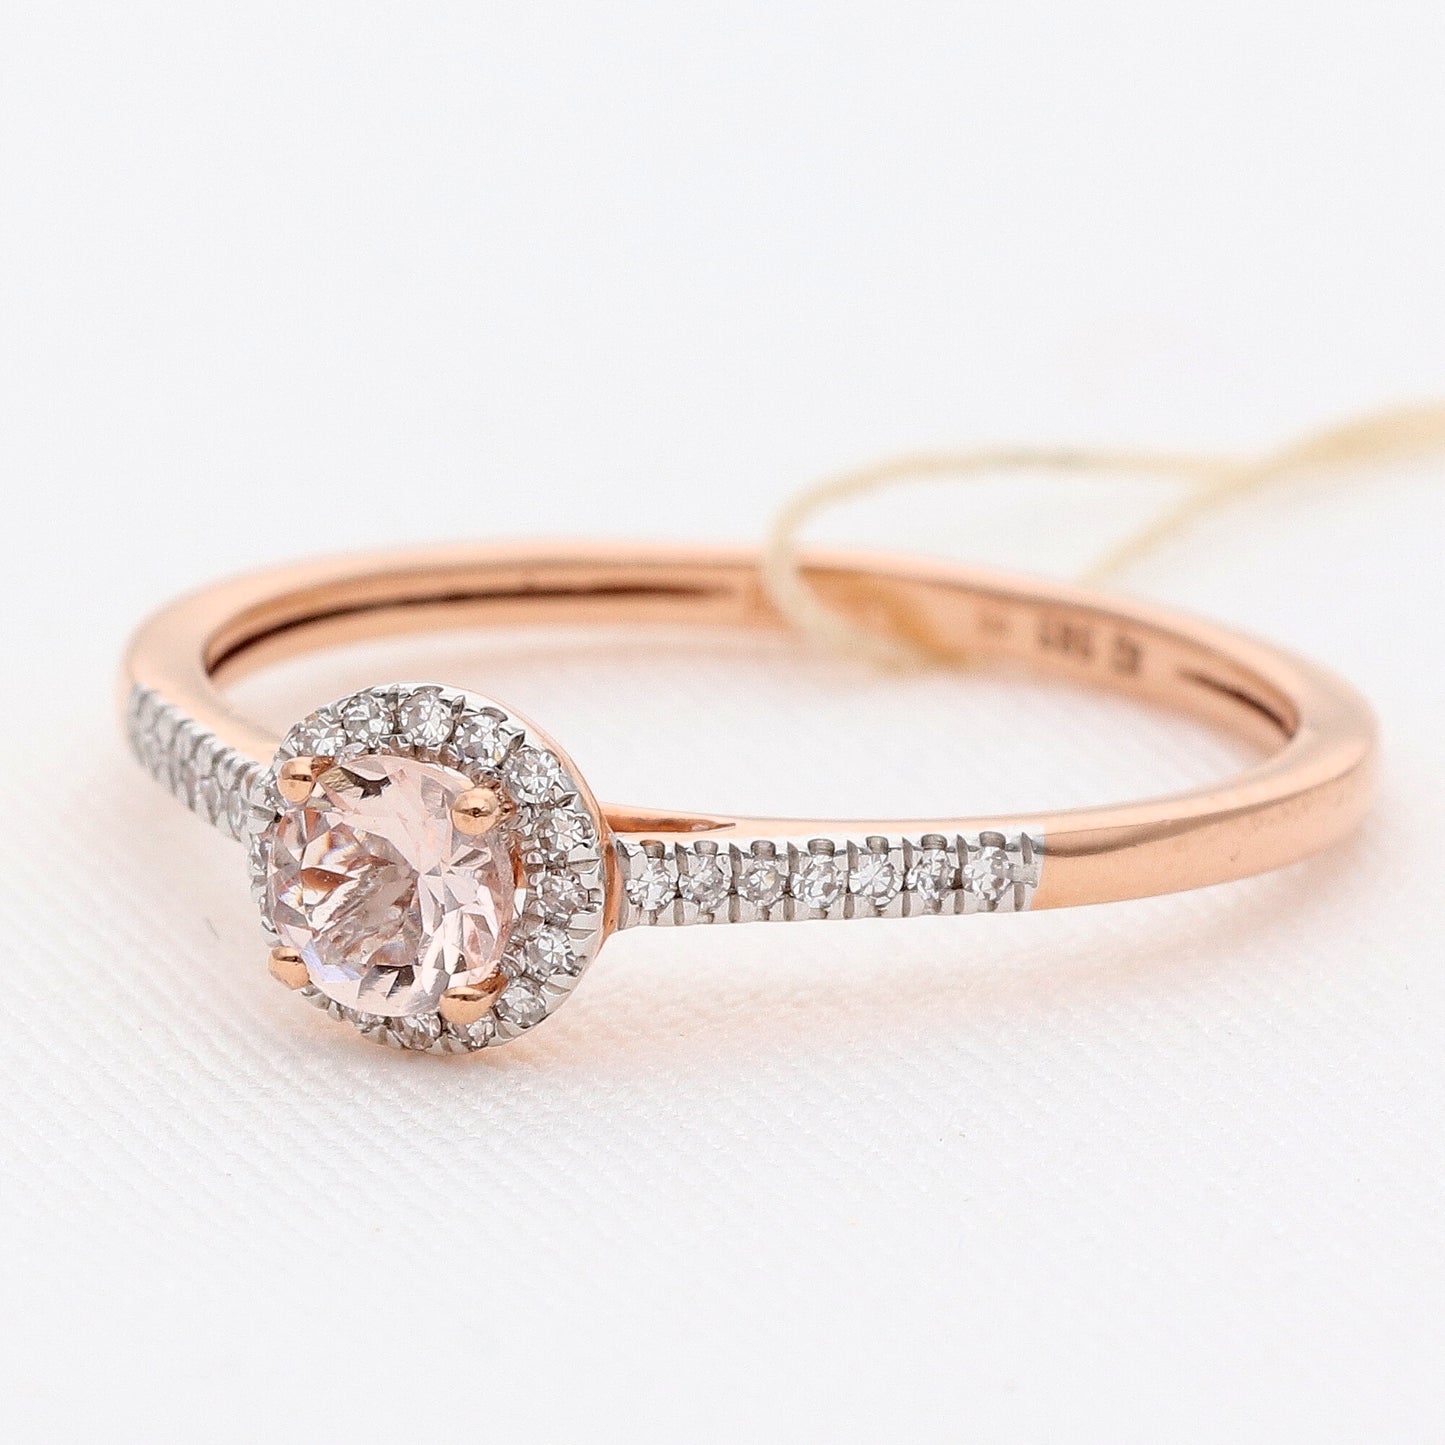 Auksinis žiedas su deimantais 0,14ct vestuviniaiziedai.lt